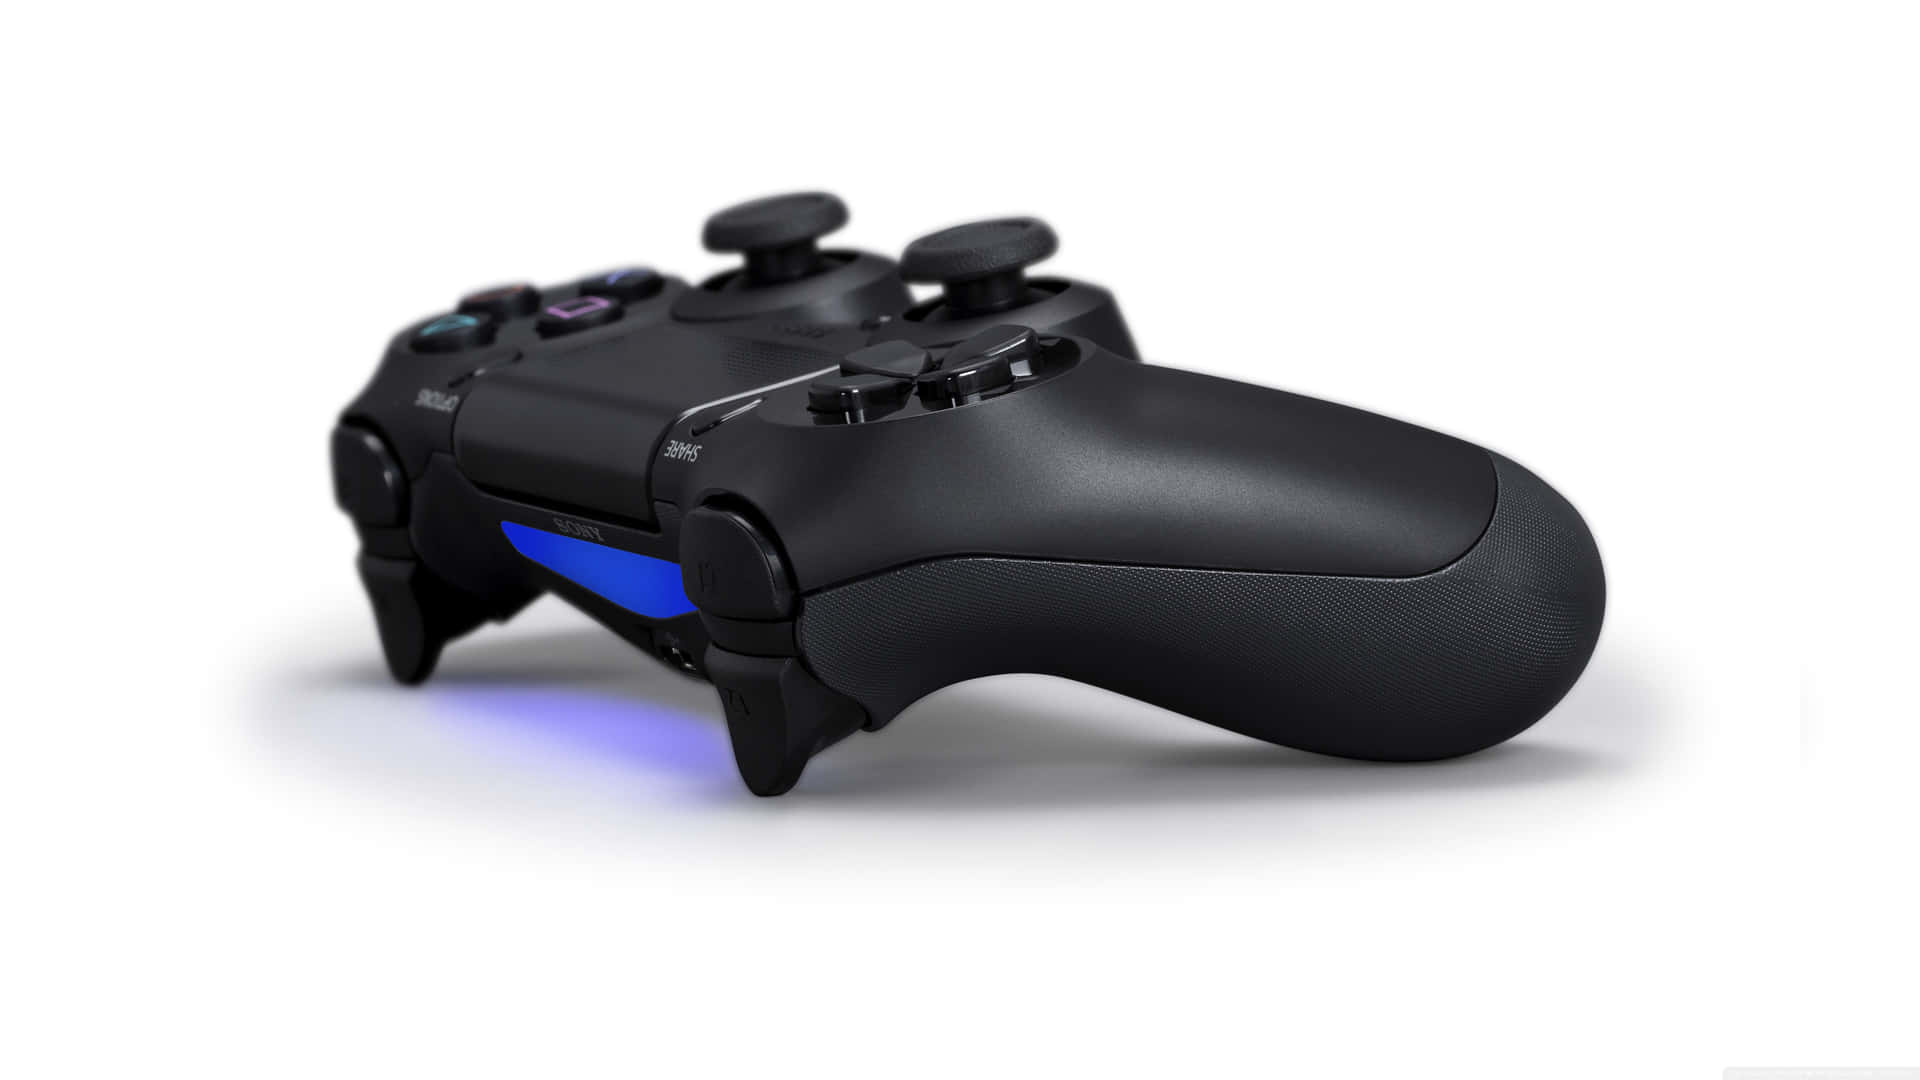 Einschwarzer Playstation-controller Mit Blauen Lichtern. Wallpaper